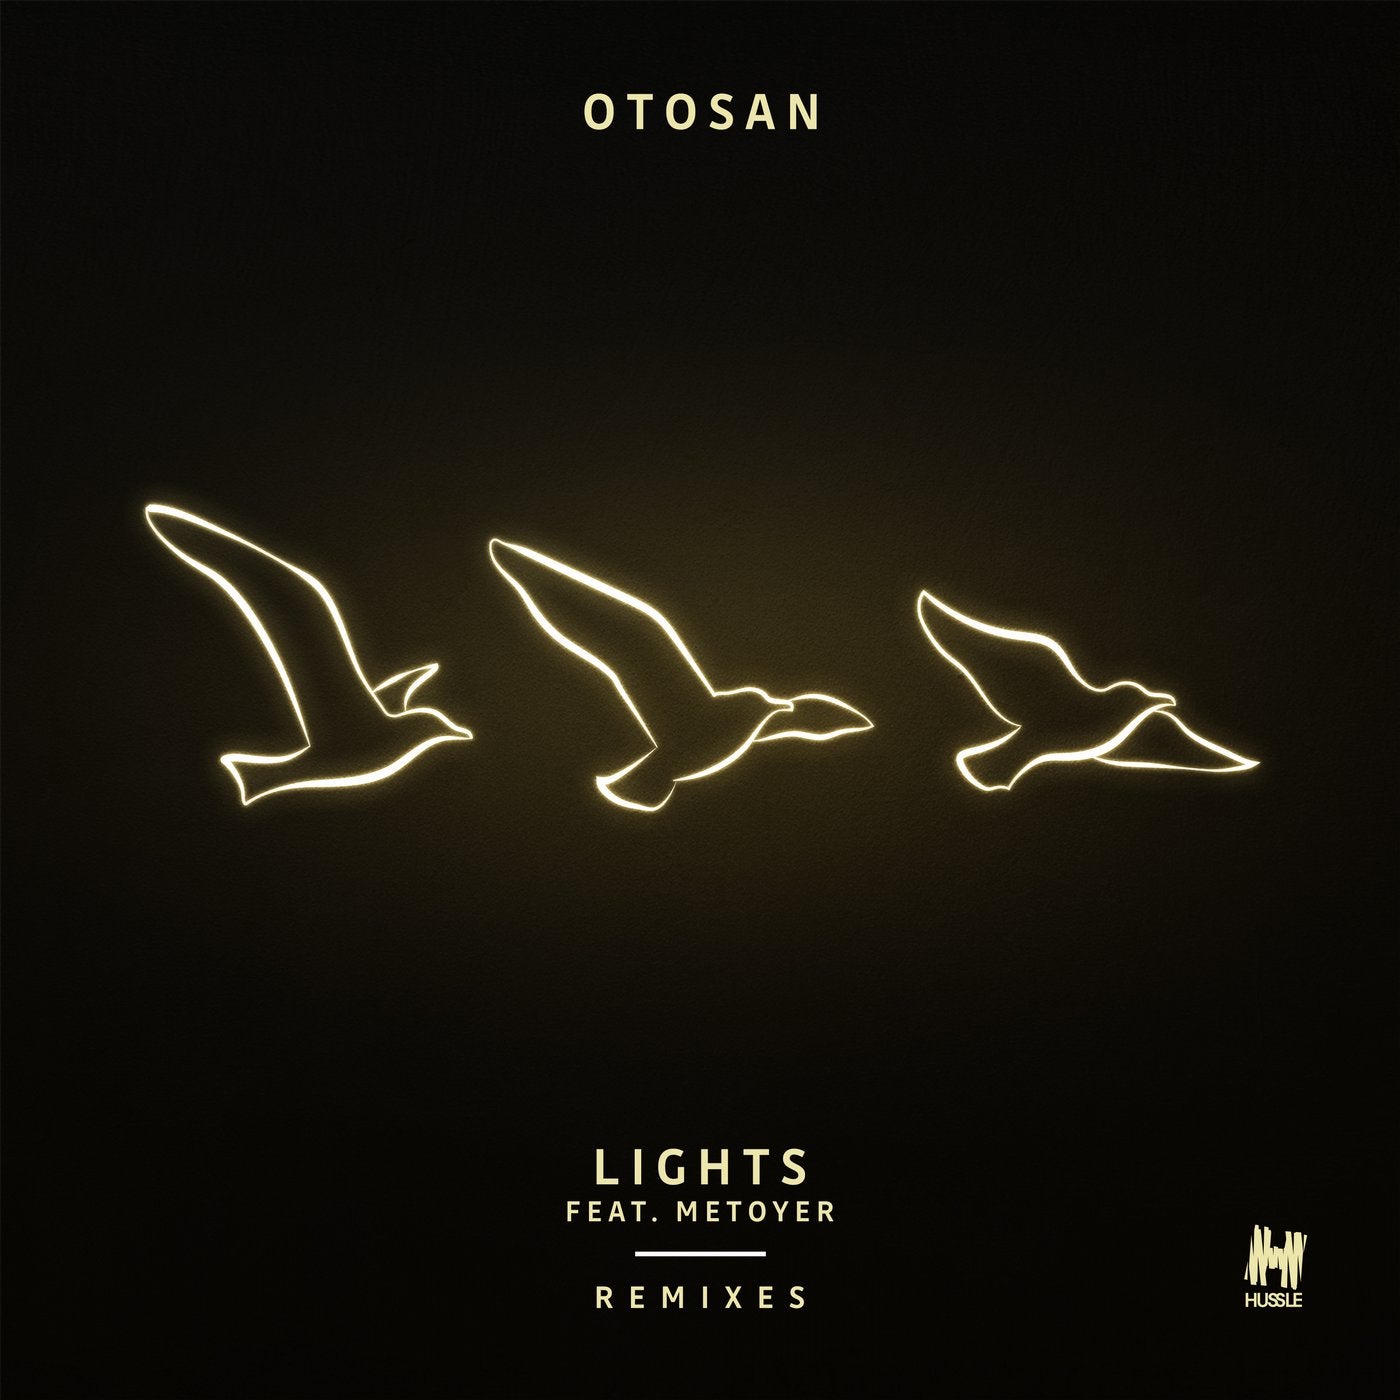 Lights (Remixes) feat. Metoyer